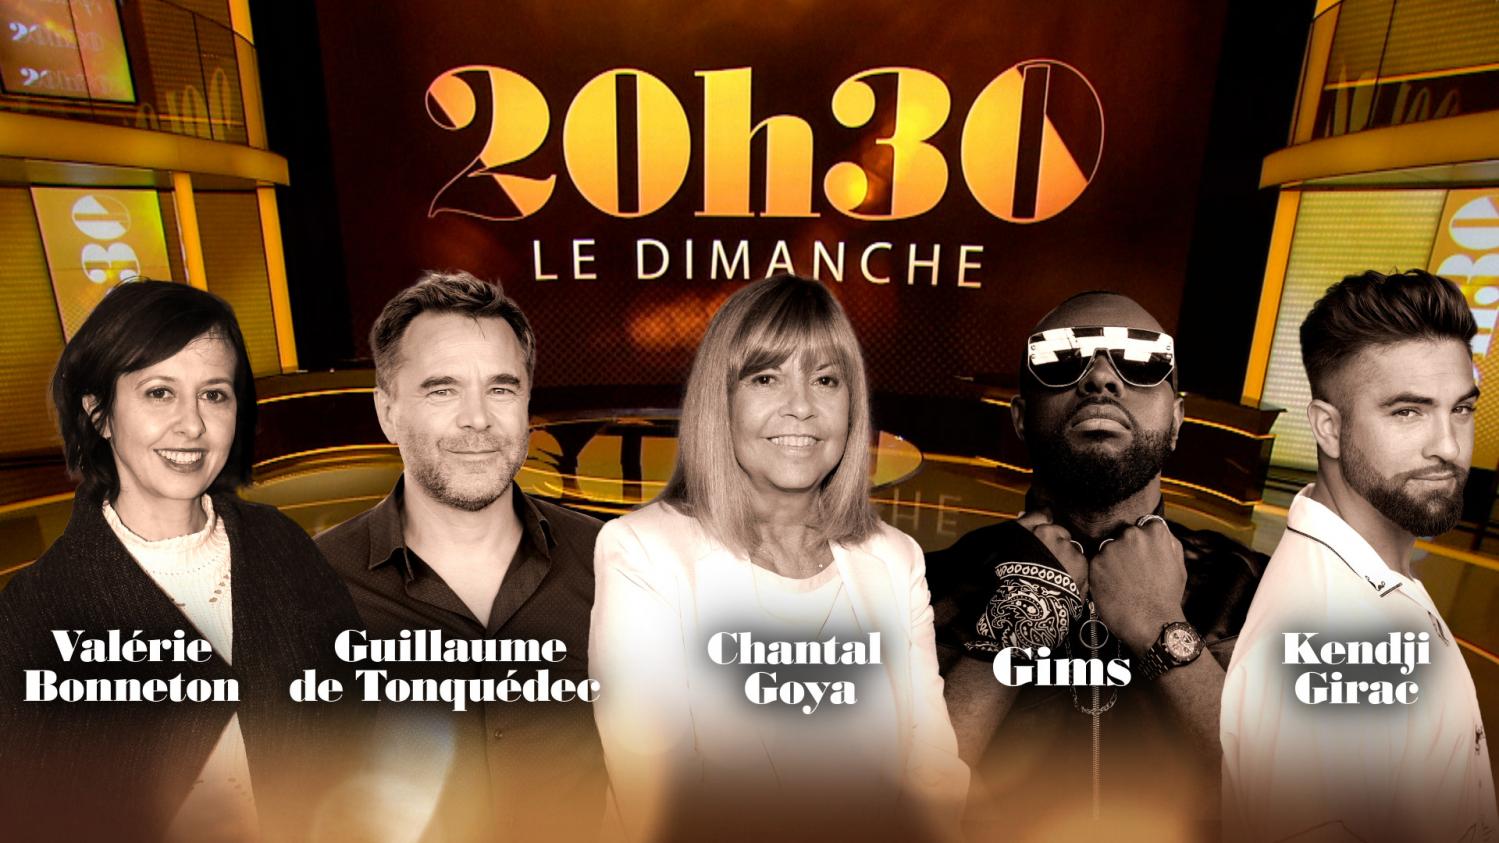 "20h30 le dimanche" avec Chantal Goya, Valérie Bonneton, Guillaume de Tonquédec, Gims et Kendji Girac - France 2 - 13 décembre 2020